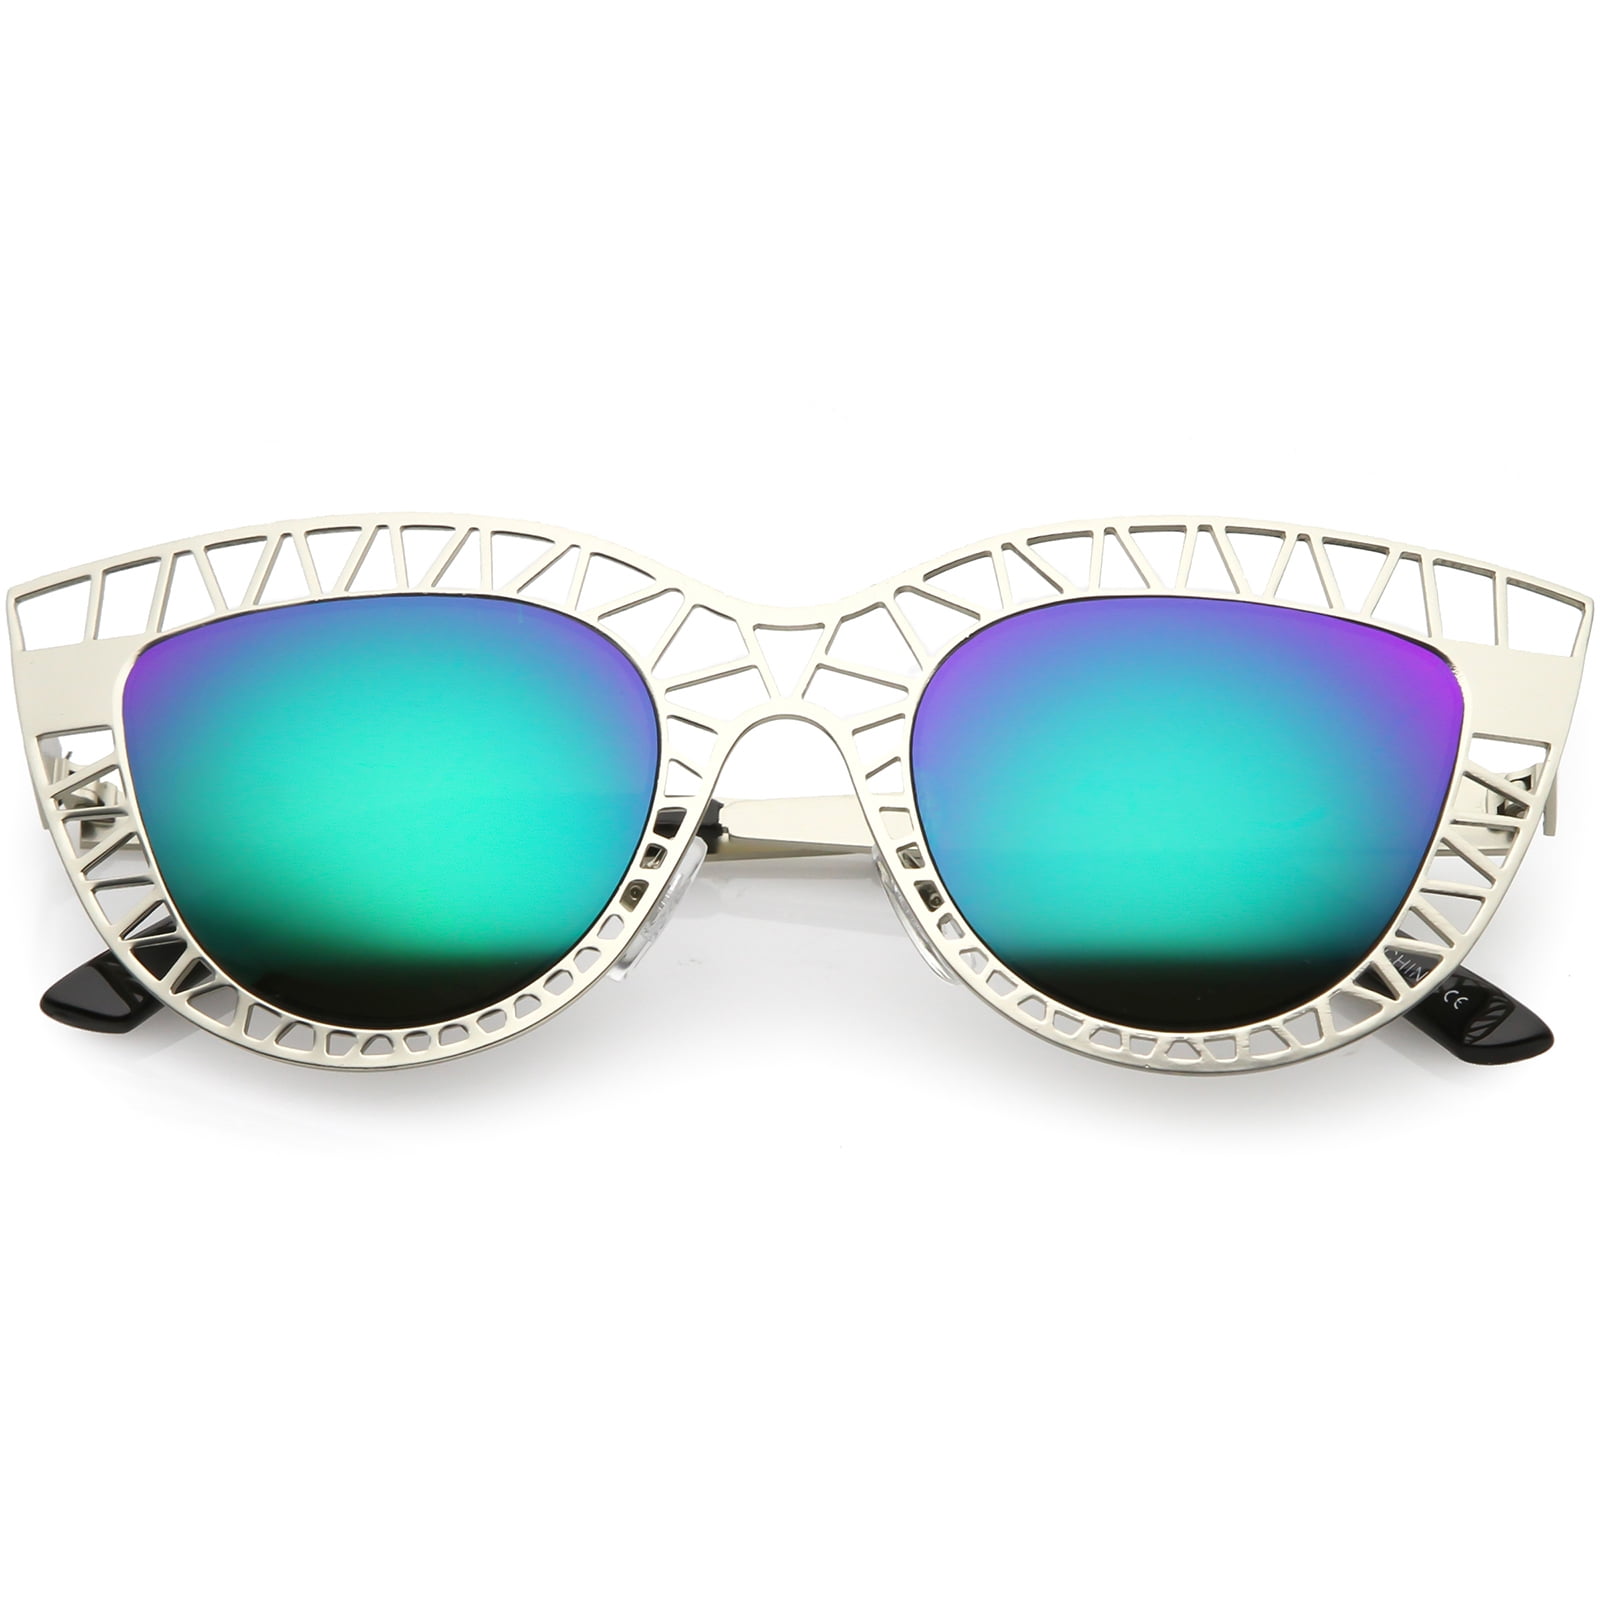 Aggregate 191+ quay australia mirrored sunglasses super hot